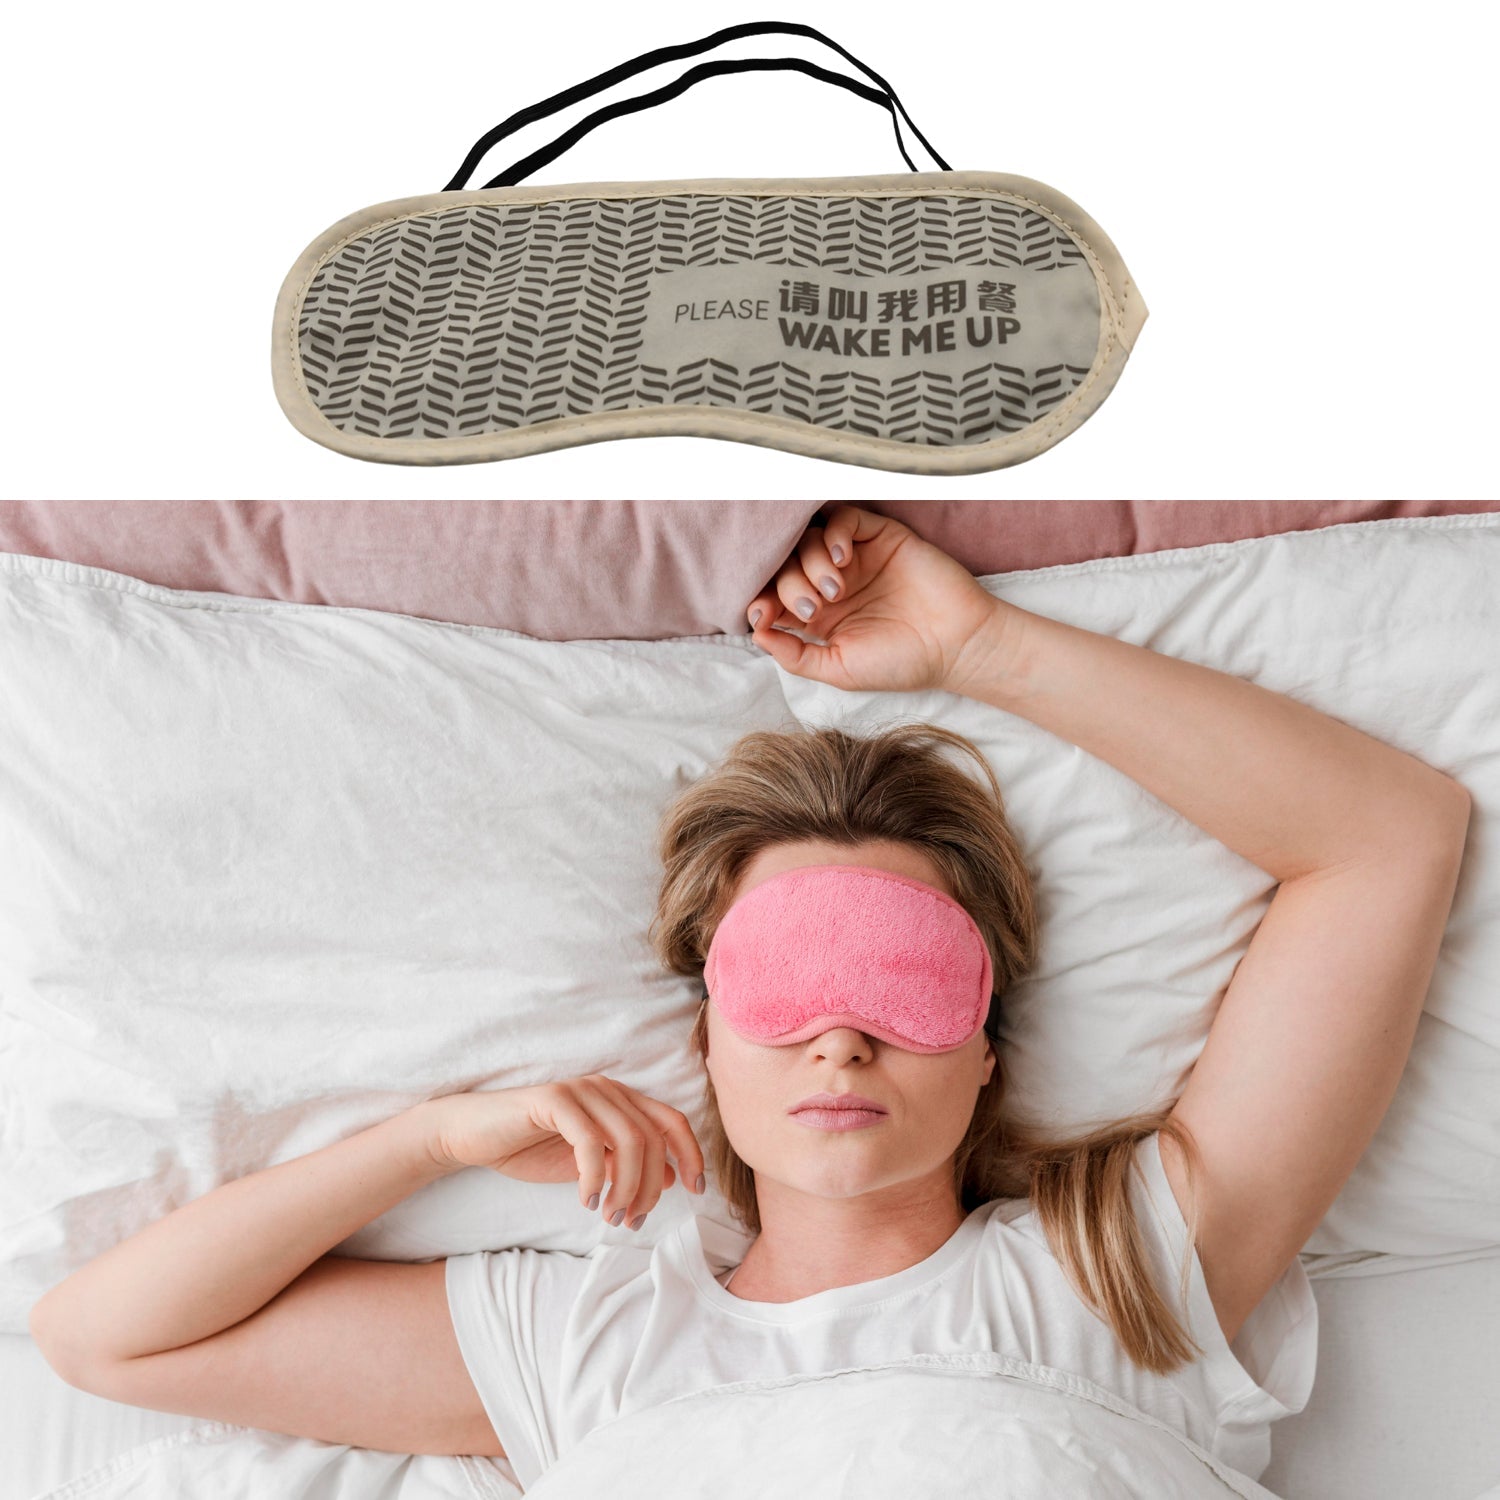 New Men, Women Blindfold Soft Satin Sleep Mask Eye Mask Blind Fold Block Out Light For Travel, Shift Work & Meditation (1Pc)